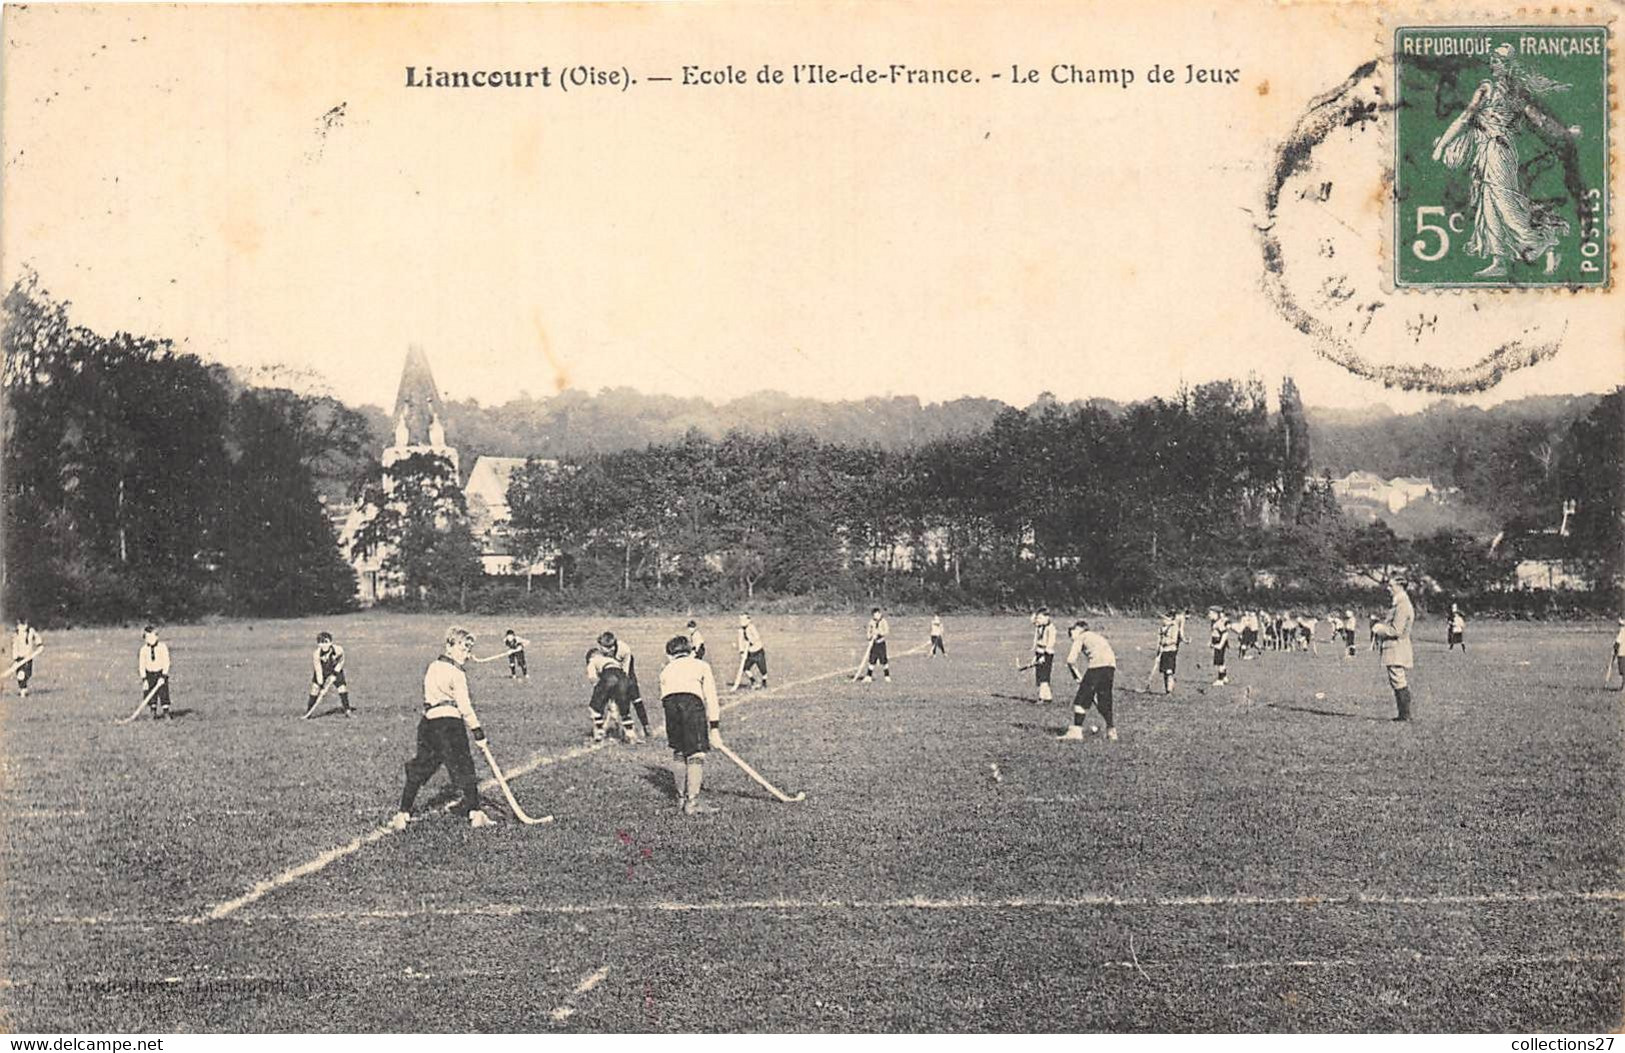 60-LIANCOURT-ECOLE DE L'ILE -DE-FRANCE- LE CHAMP DE JEUX - Liancourt